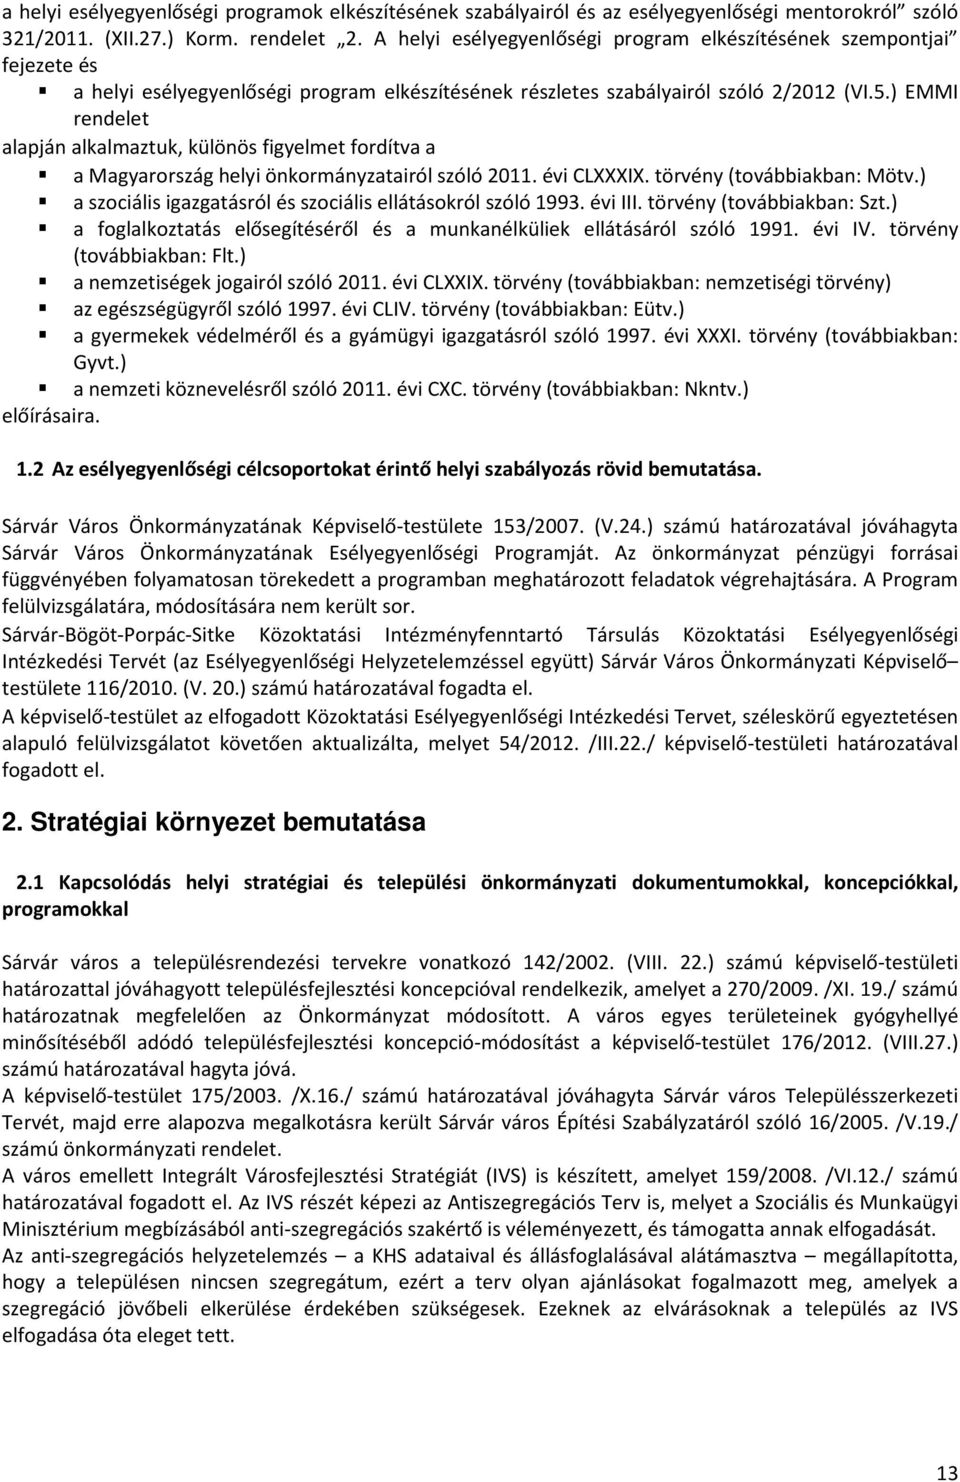 ) EMMI rendelet alapján alkalmaztuk, különös figyelmet fordítva a a Magyarország helyi önkormányzatairól szóló 2011. évi CLXXXIX. törvény (továbbiakban: Mötv.